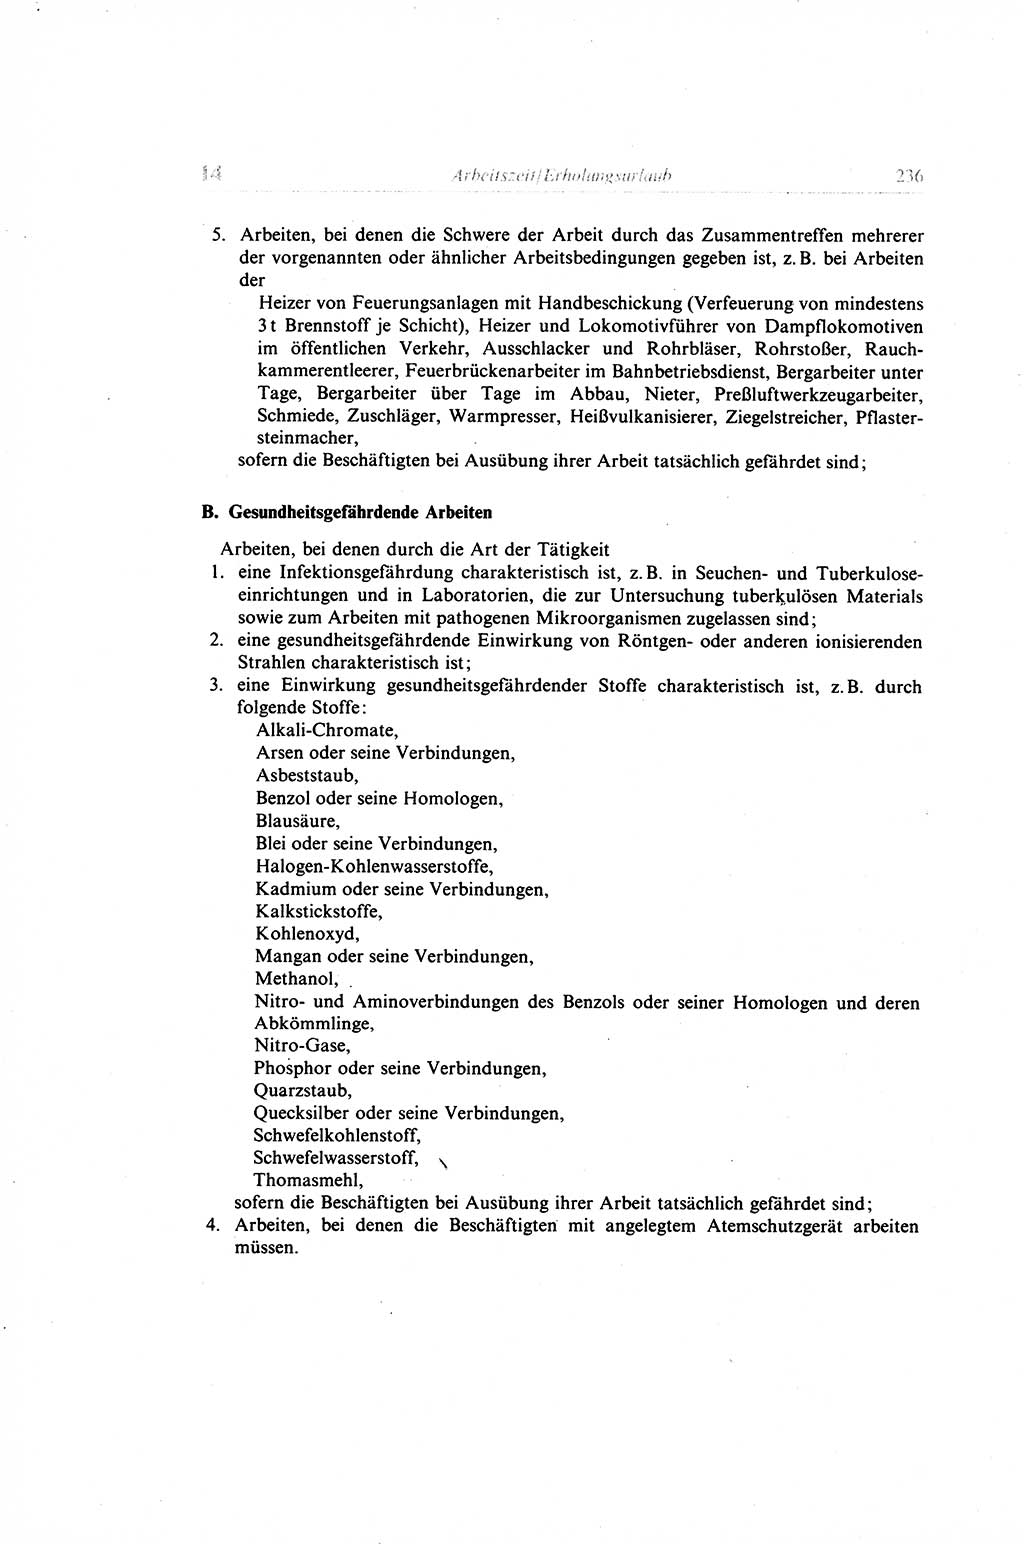 Gesetzbuch der Arbeit (GBA) und andere ausgewählte rechtliche Bestimmungen [Deutsche Demokratische Republik (DDR)] 1968, Seite 236 (GBA DDR 1968, S. 236)